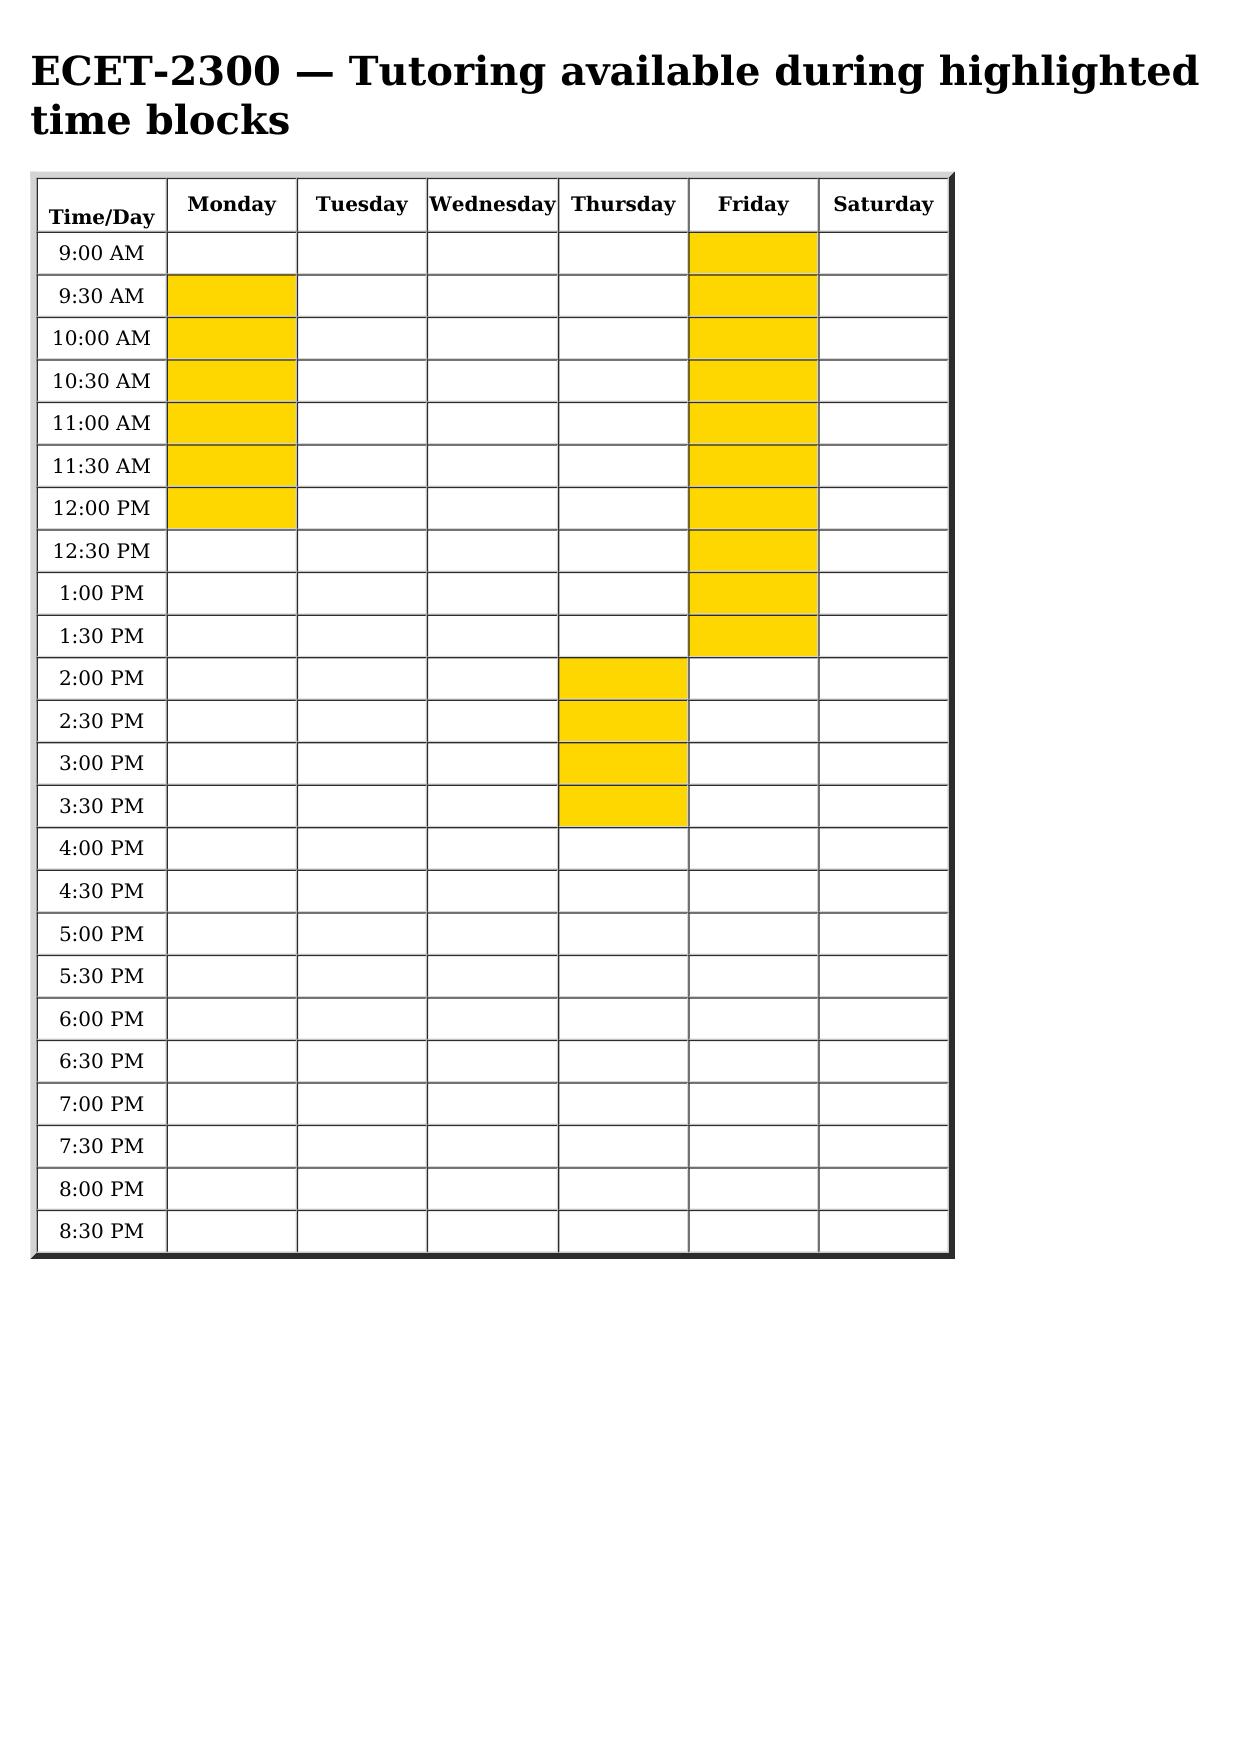 ecet 2300 schedule